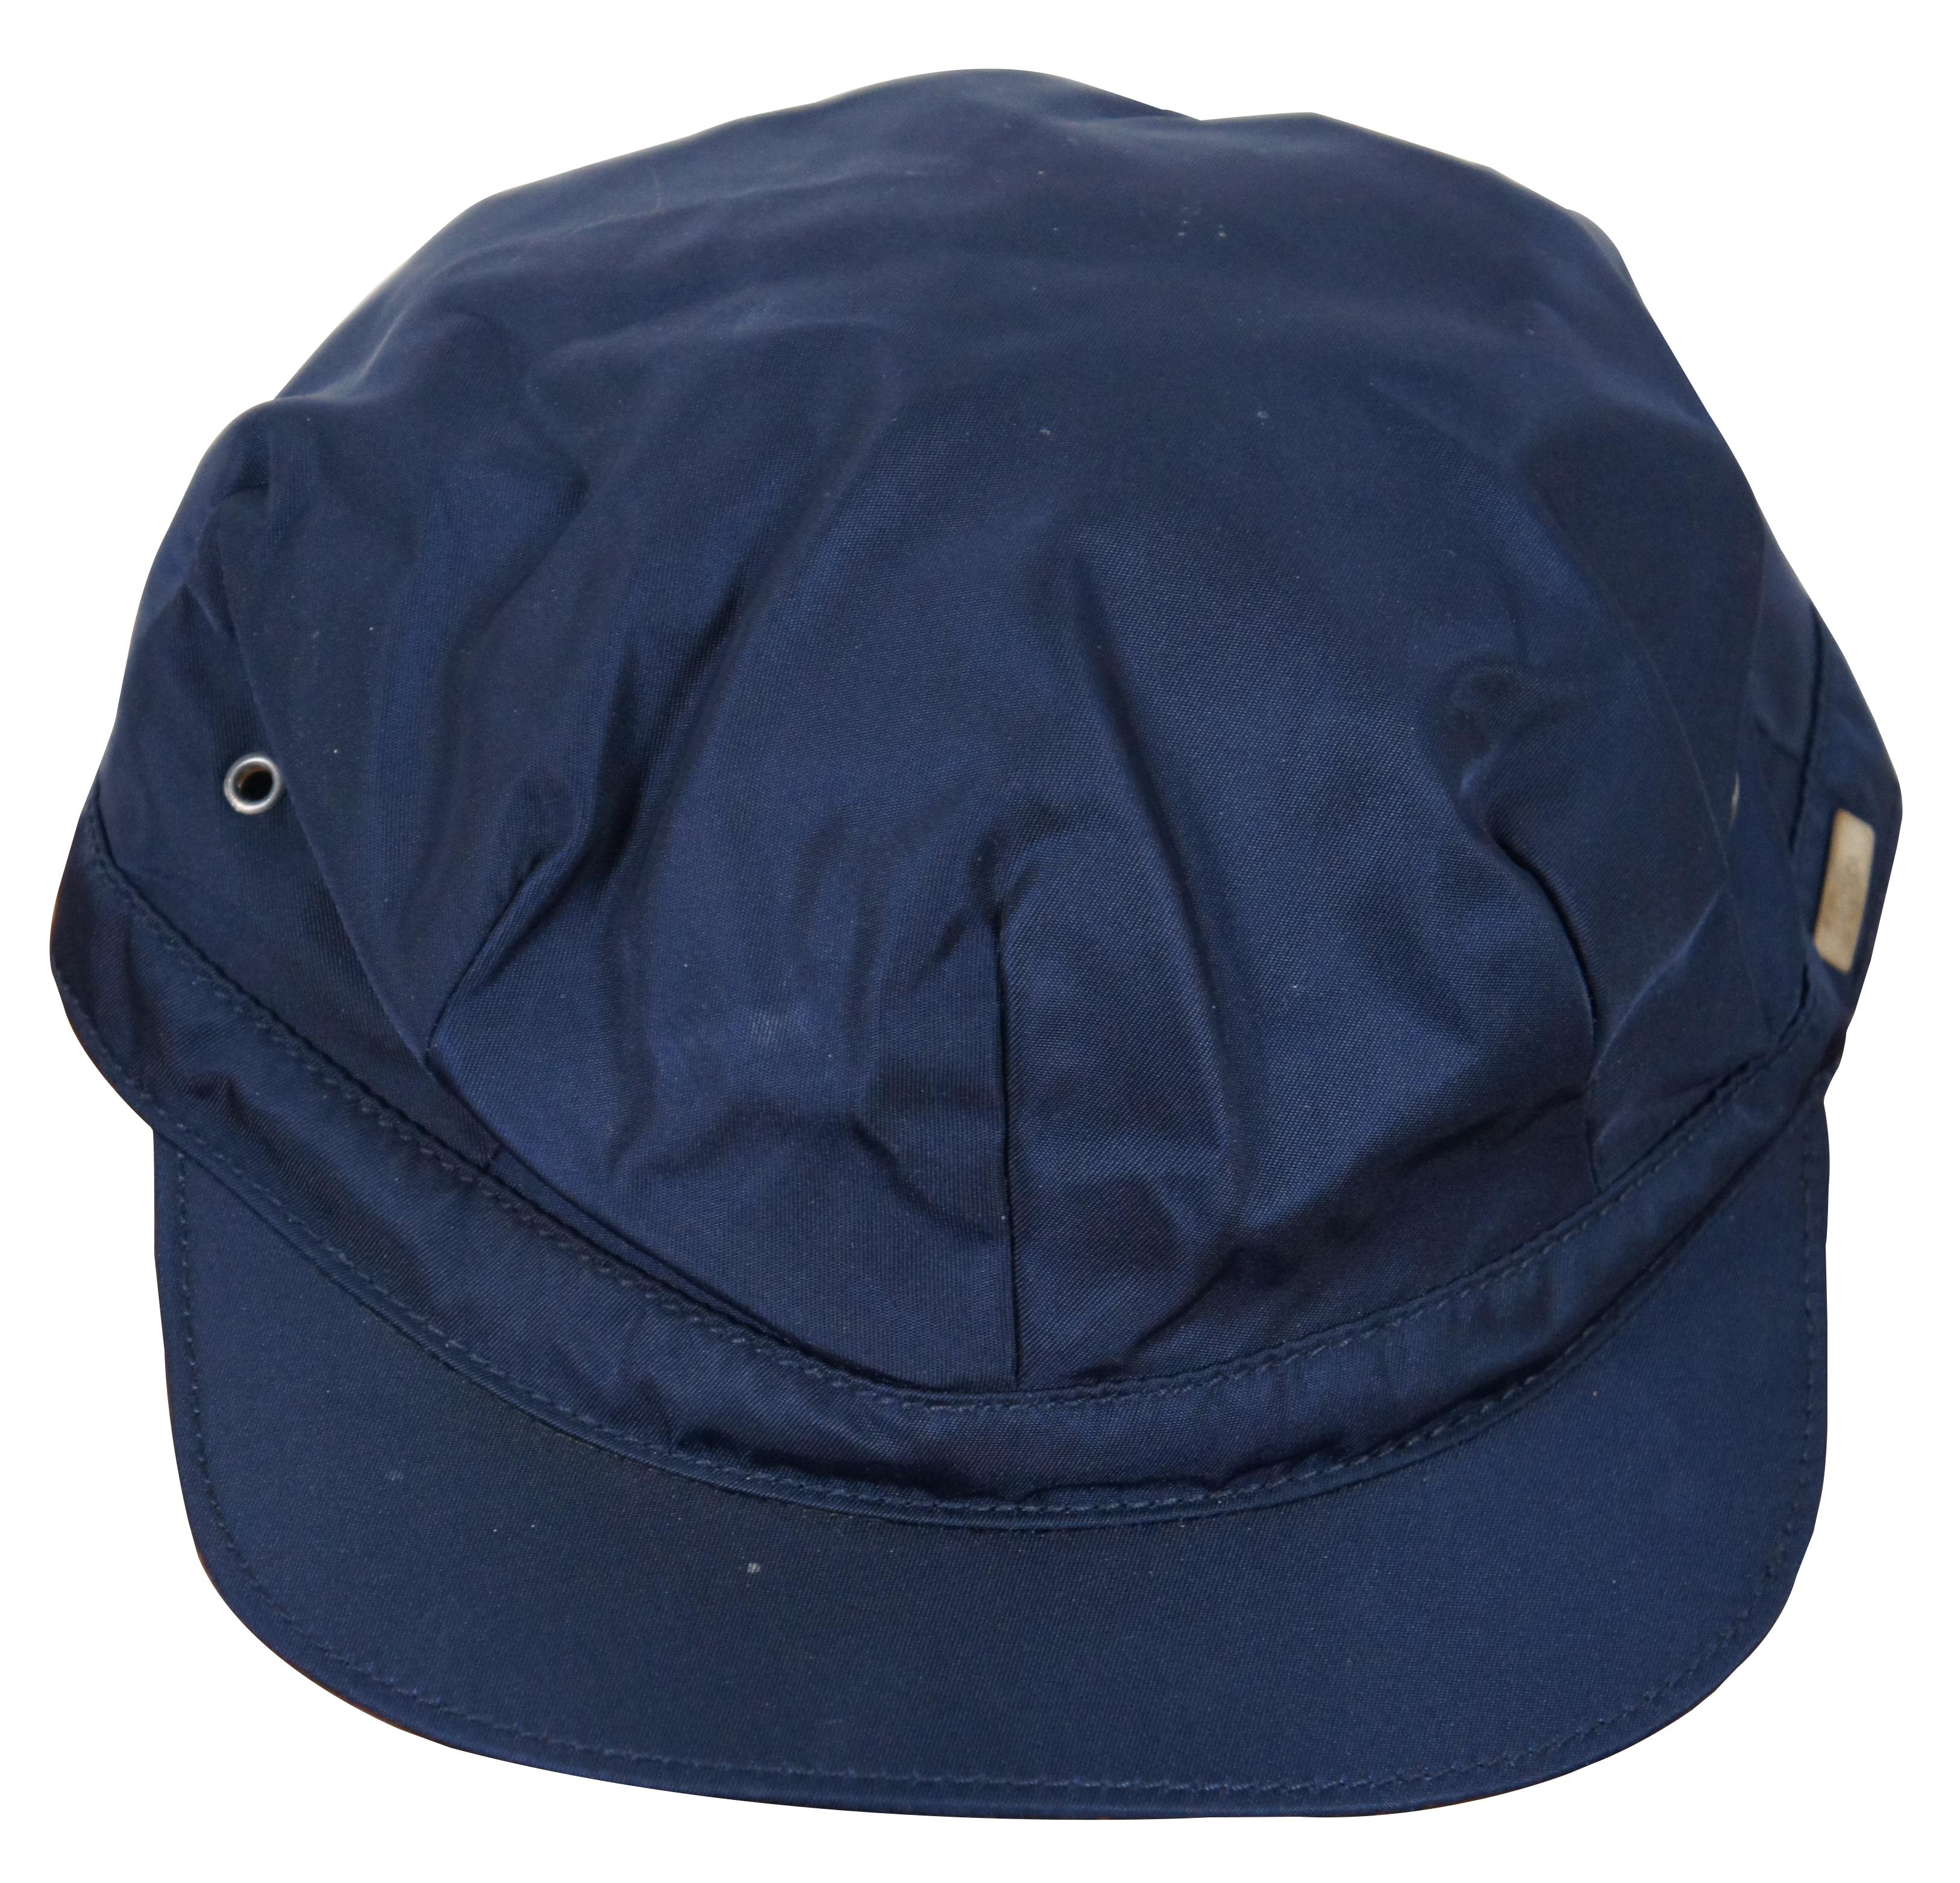 Rare casquette Prada à bord court en polymide bleu marine pour cycliste, pêcheur ou conducteur de train, avec œillets.

Taille M / 7